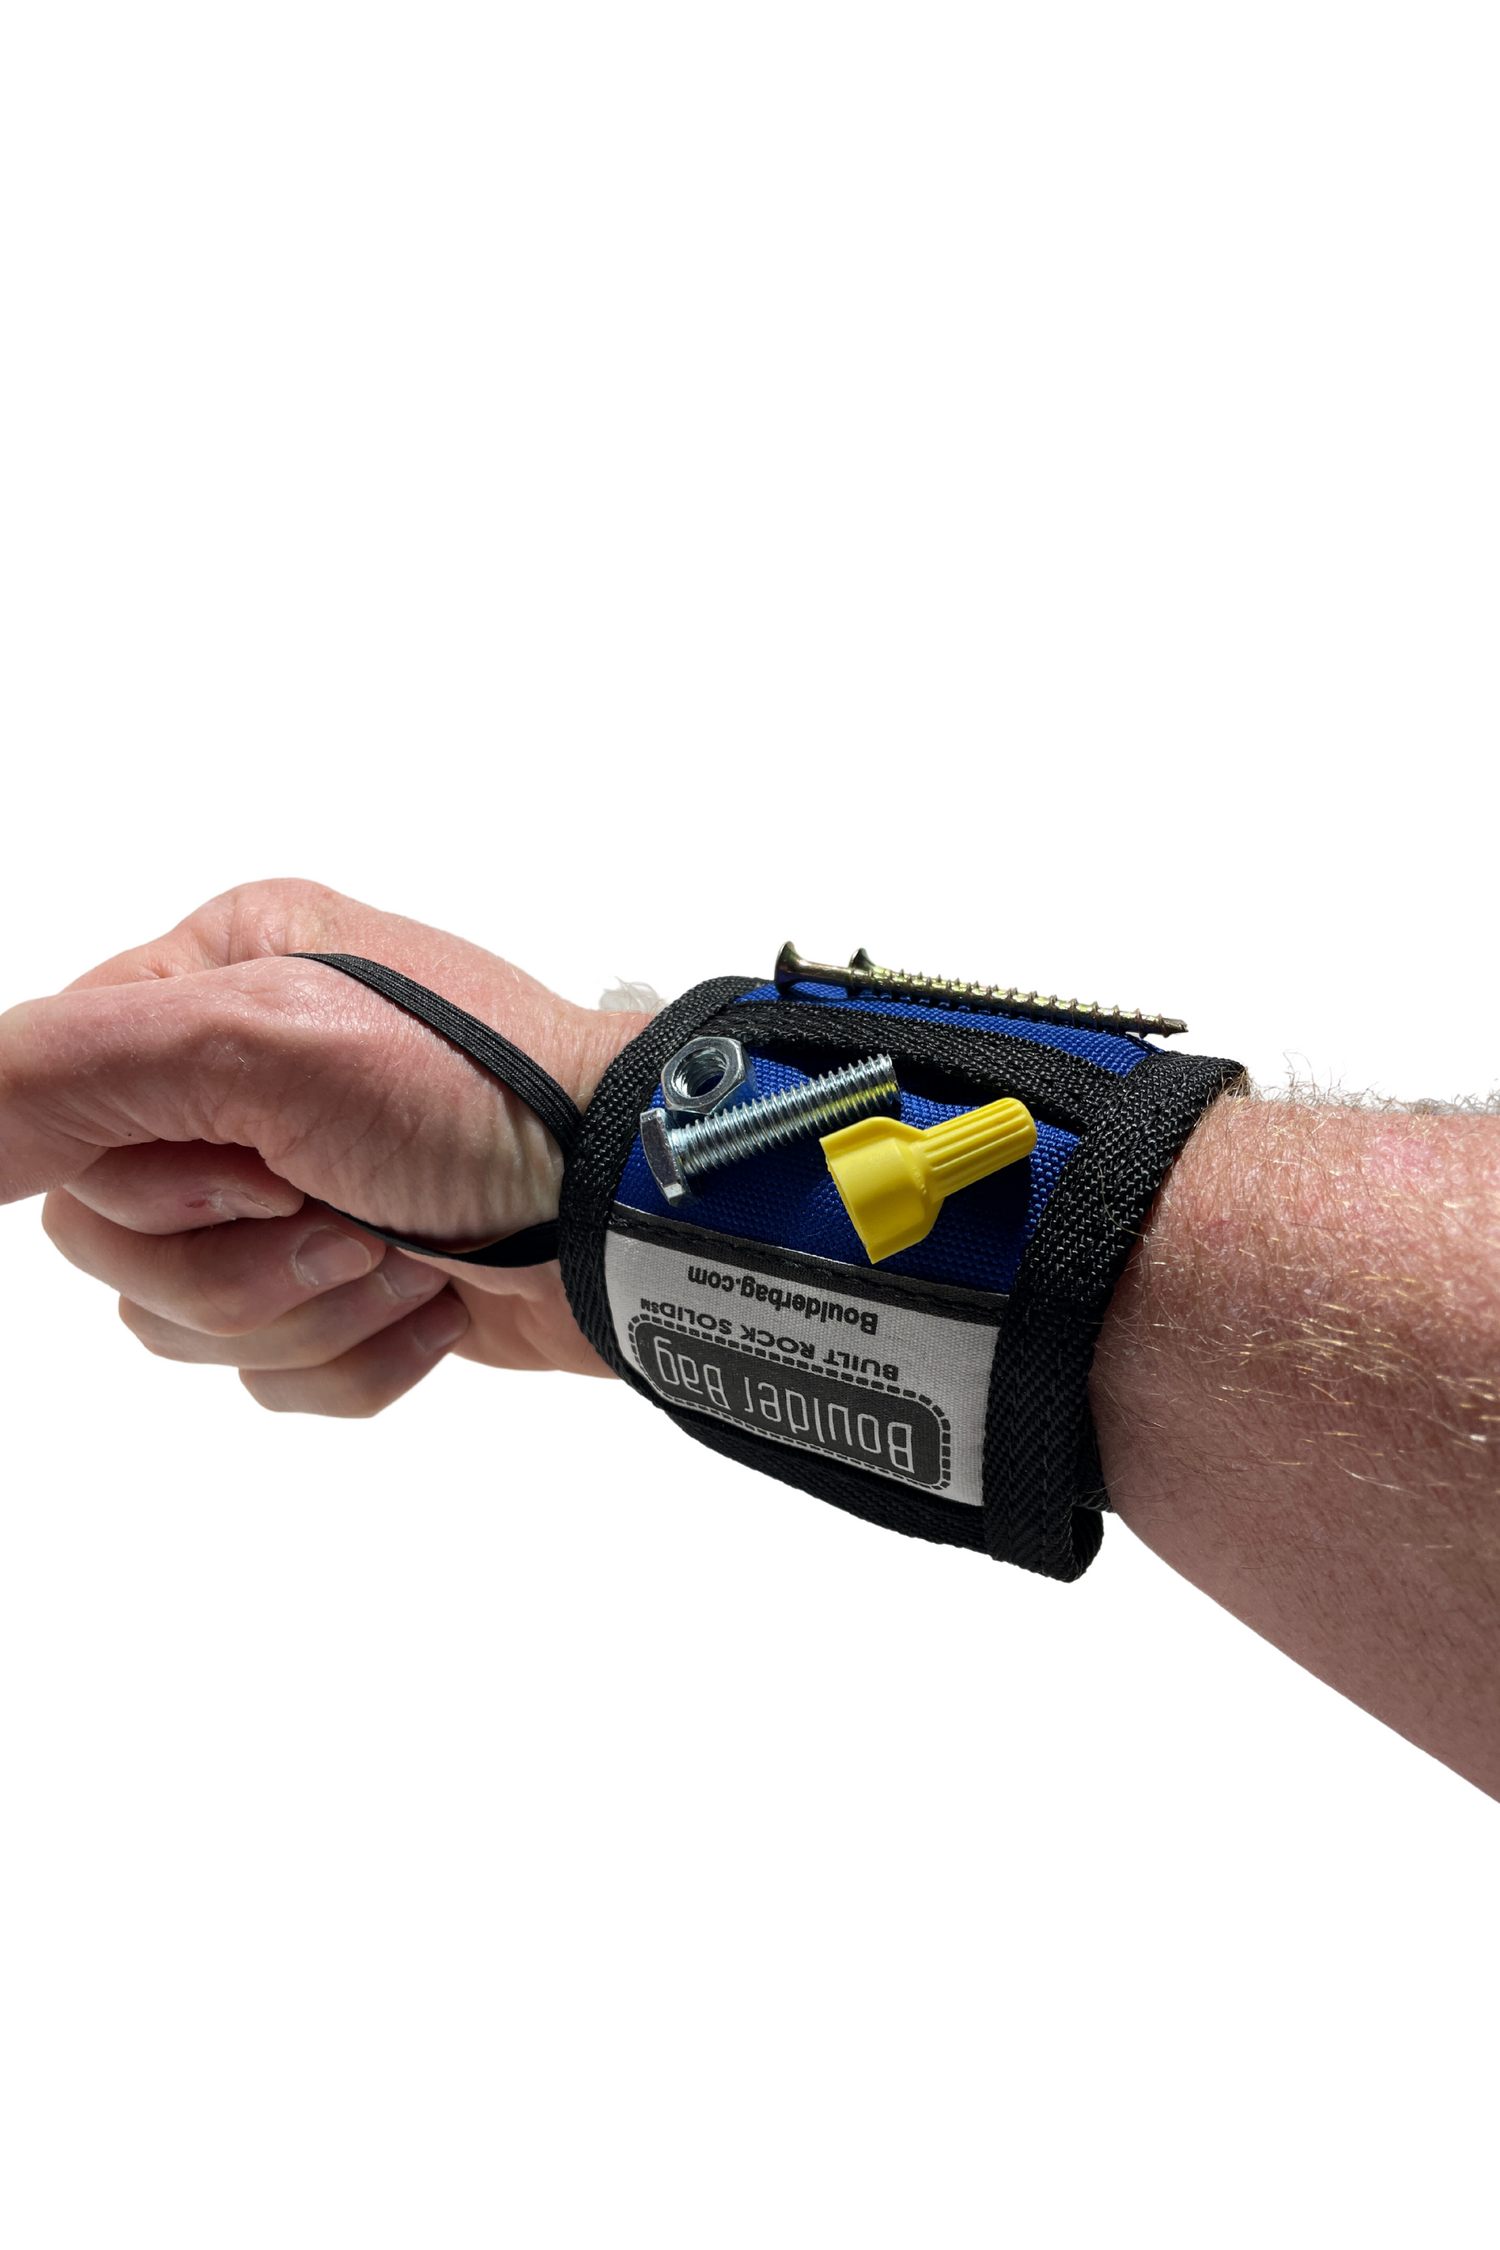 BOULDER BAG Ultimate Magnetic Wristband